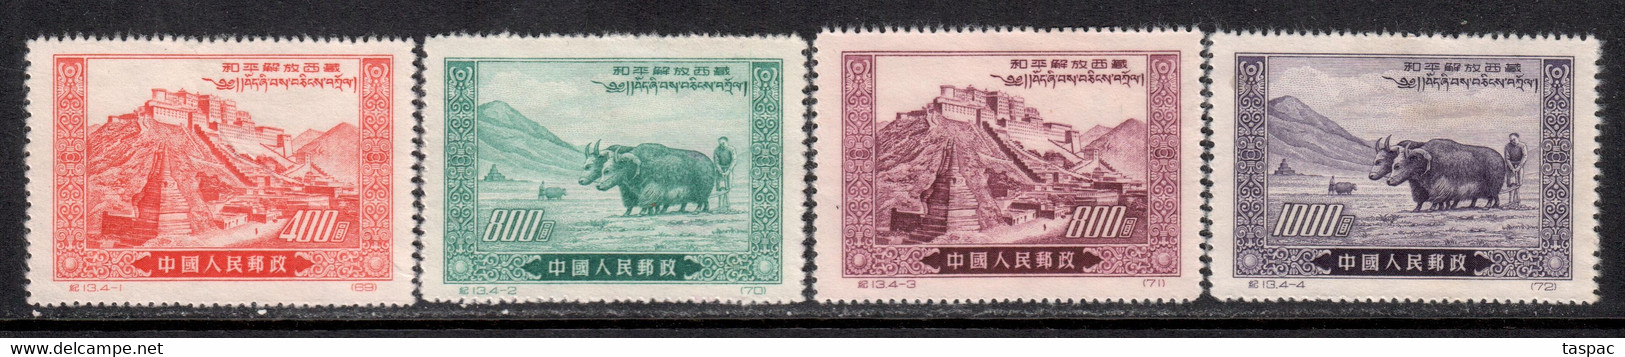 China P.R. 1952 Mi# 137-140 II (*) Mint No Gum, Hinged - Reprints - Liberation Of Tibet - Officiële Herdrukken